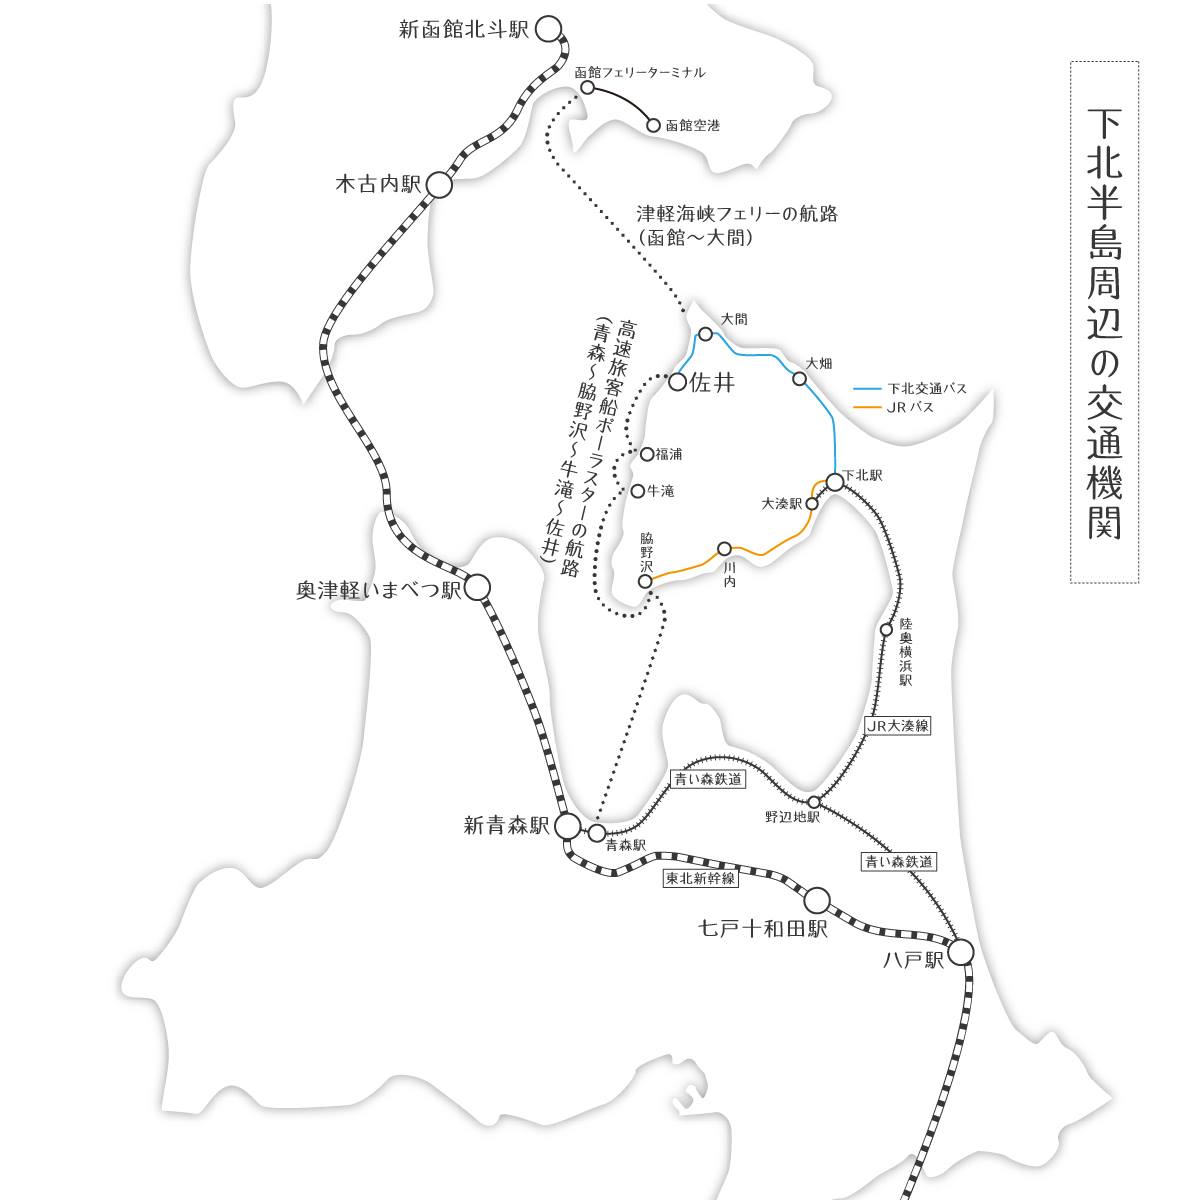 Map_Shimokita_trafic (3).jpg